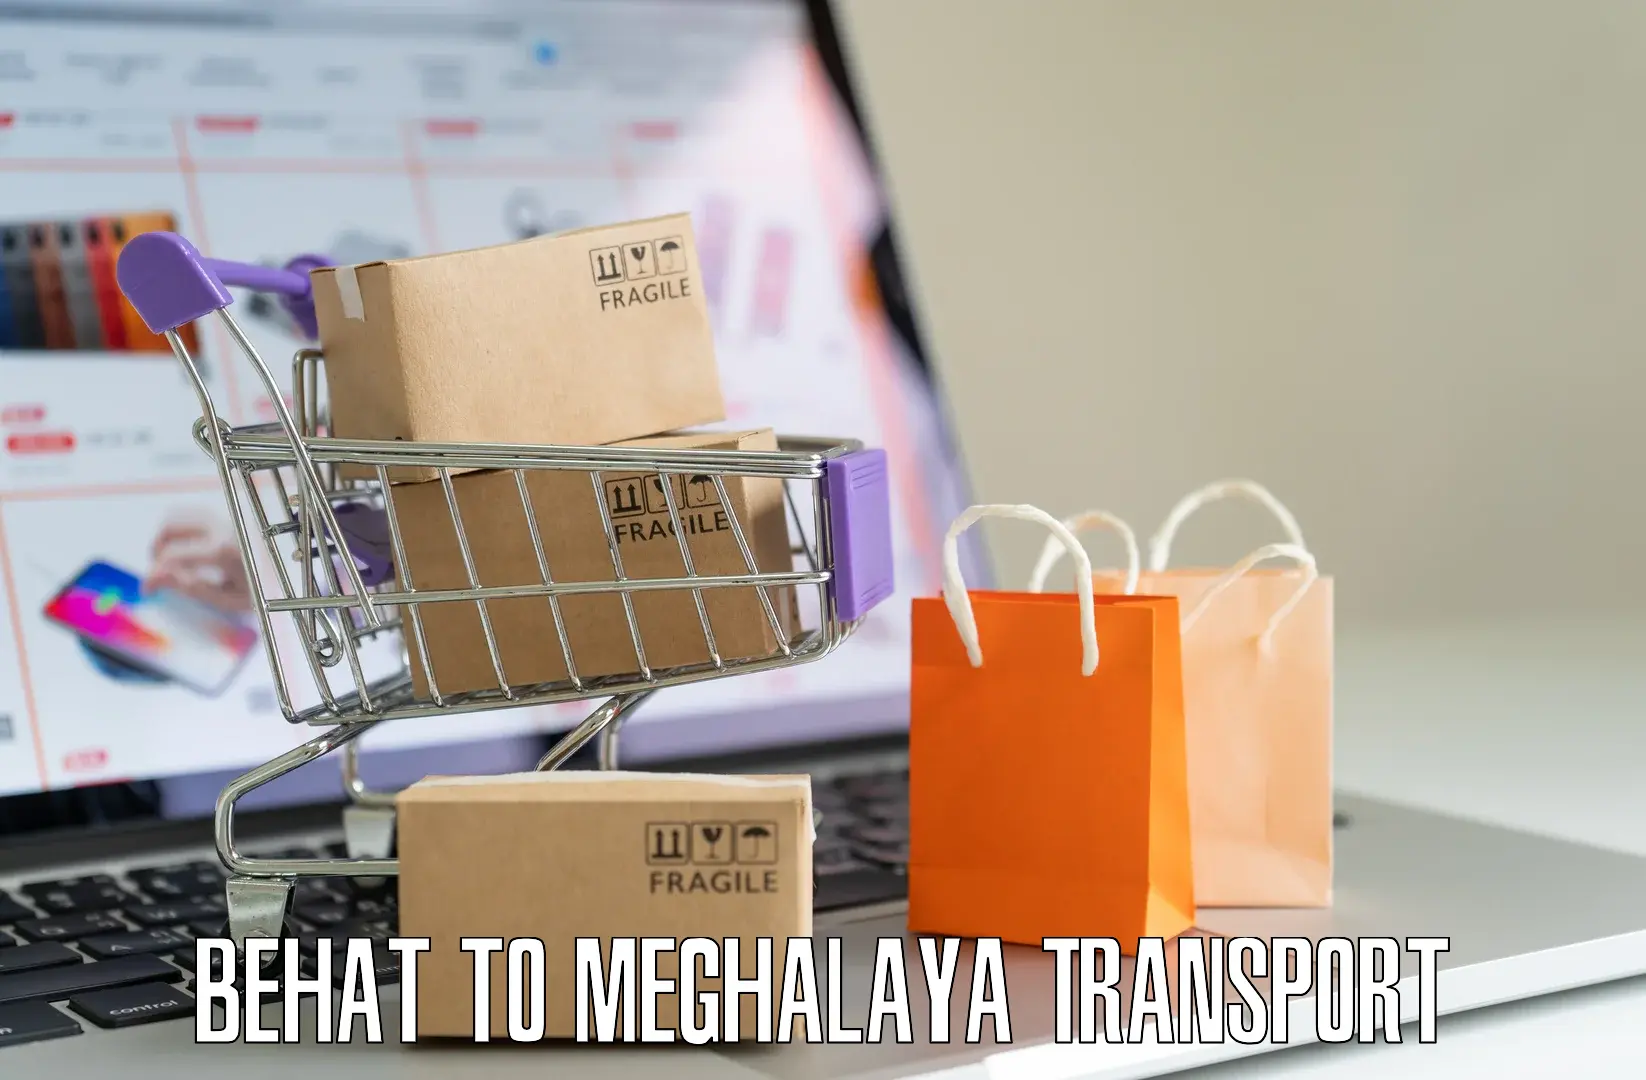 Transport in sharing Behat to Meghalaya